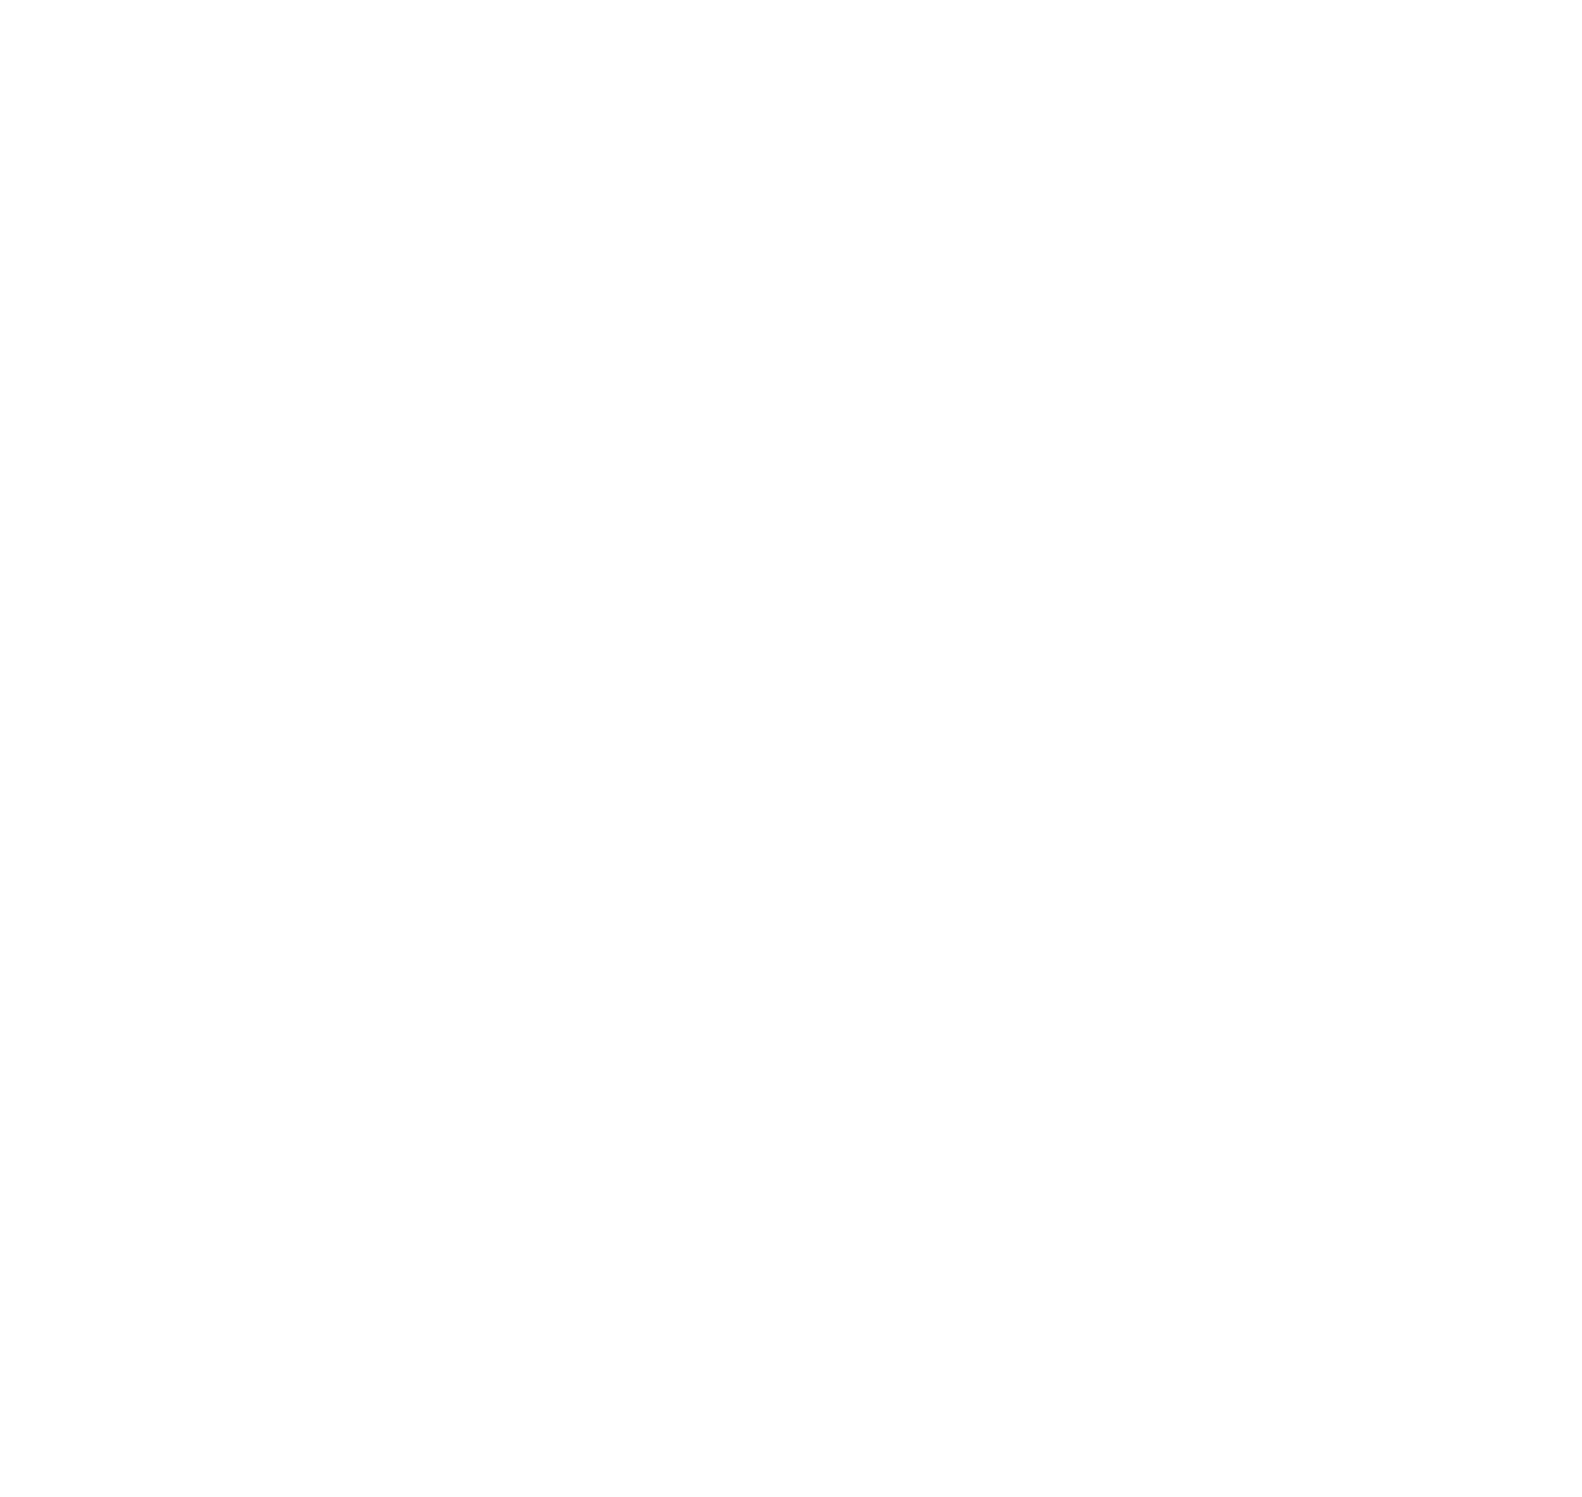 Banco Santander-Chile logo pour fonds sombres (PNG transparent)